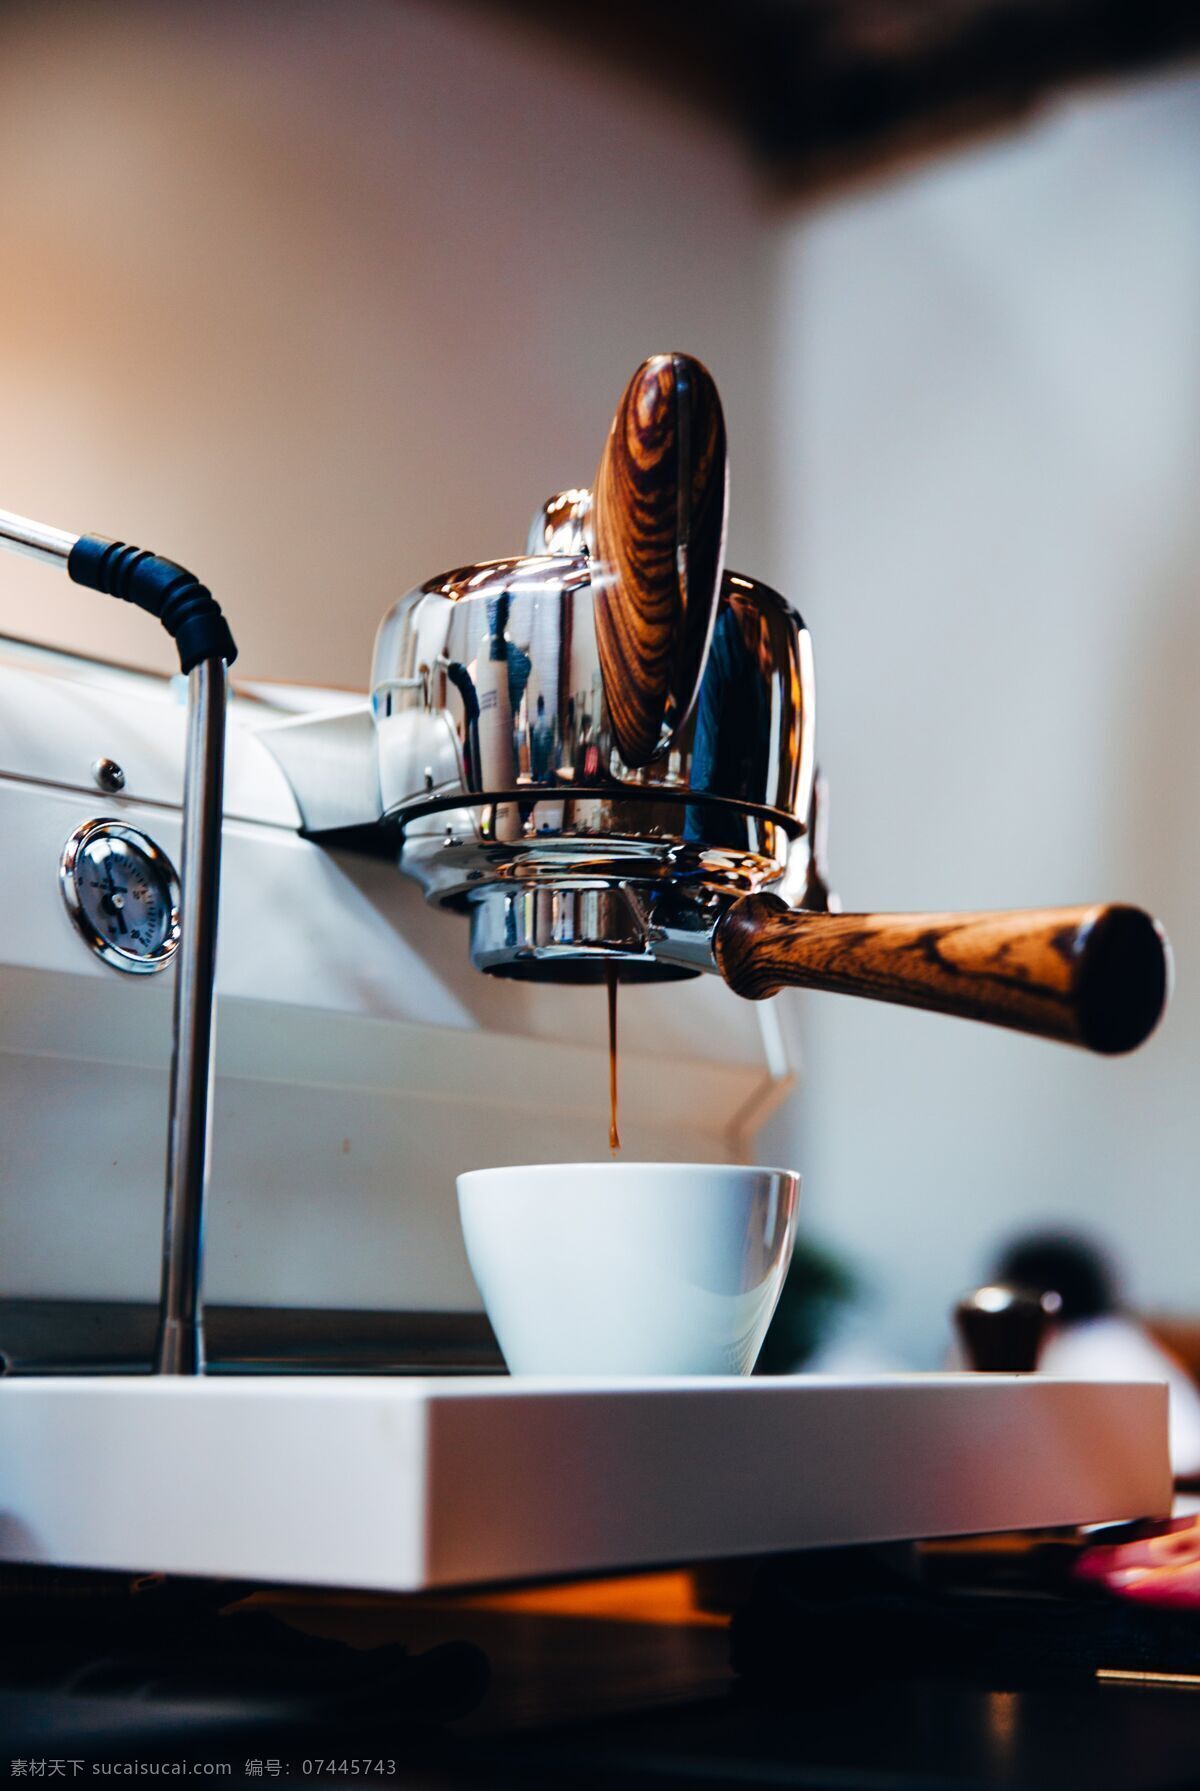 咖啡机 咖啡杯 自动咖啡杯 咖啡 机械 自动化 饮品 餐饮美食 餐具厨具